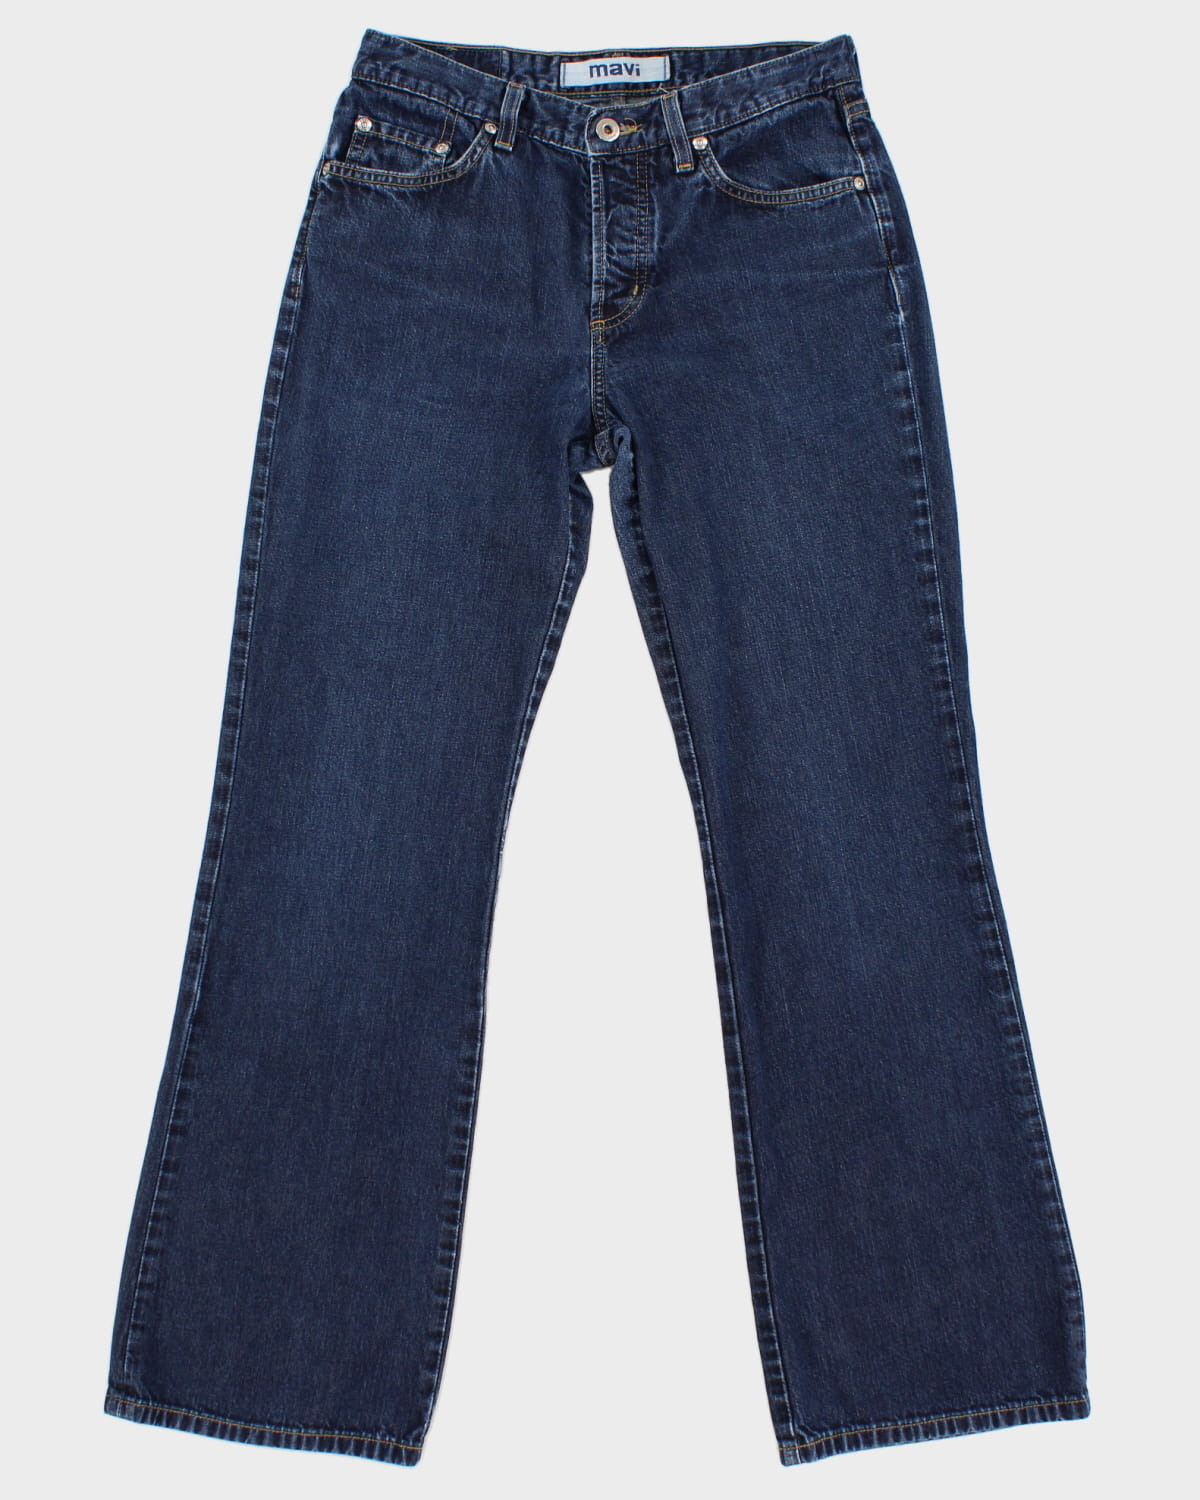 Vintage 90s Mavi 136 Molly Jeans - W28 L30